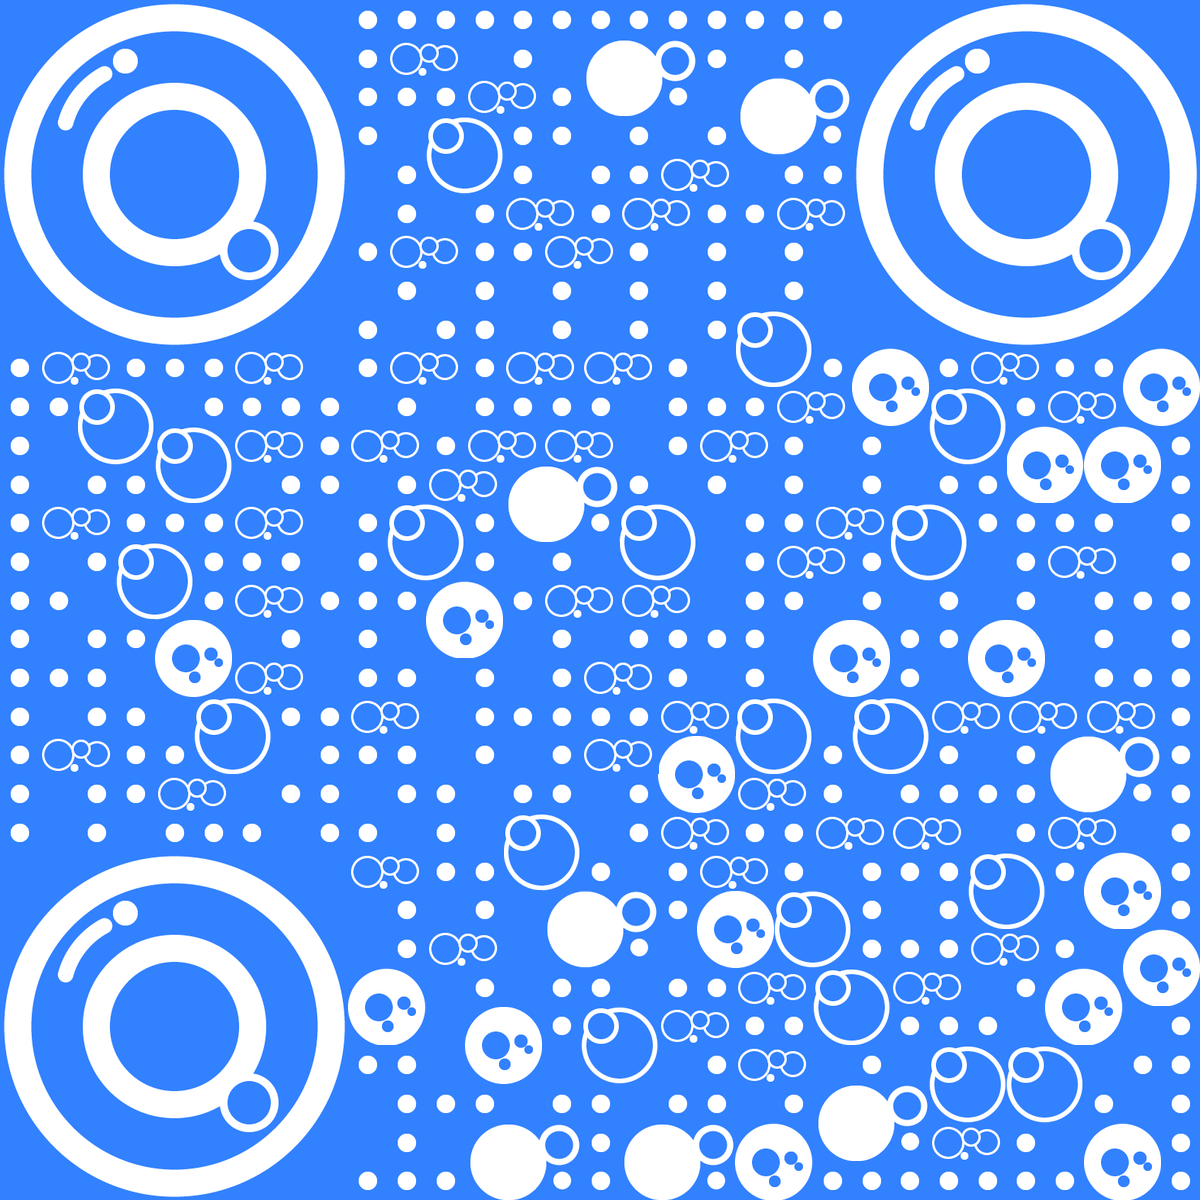 百搭蓝色泡泡休闲轻松心情分享创意二维码生成器-平面静态-无背景码